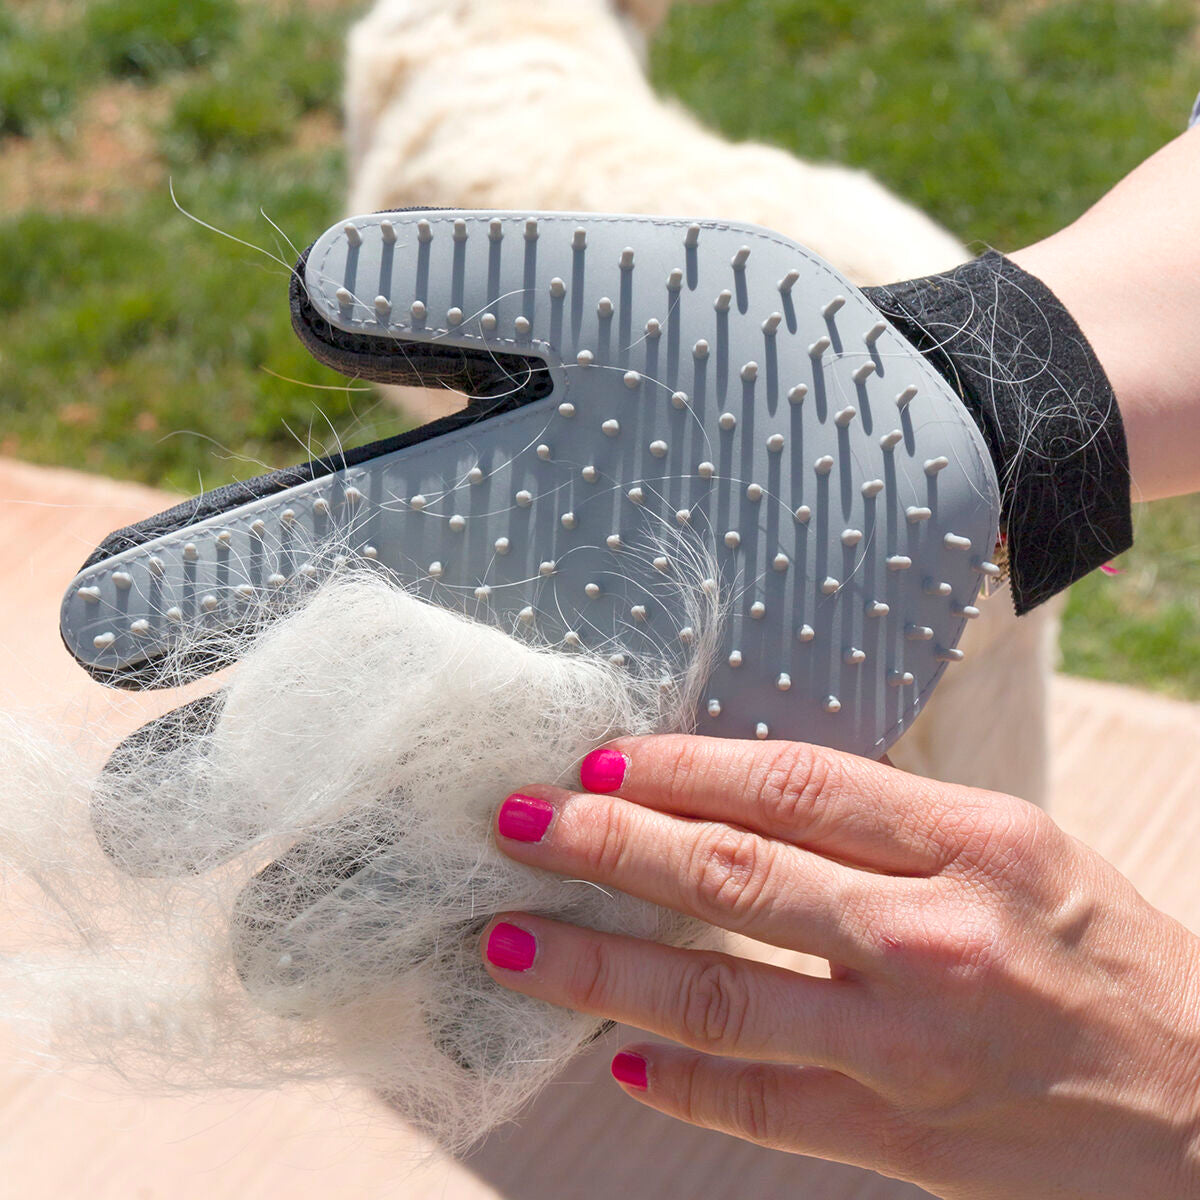 Bürsthandschuh für Haustiere Relpet InnovaGoods